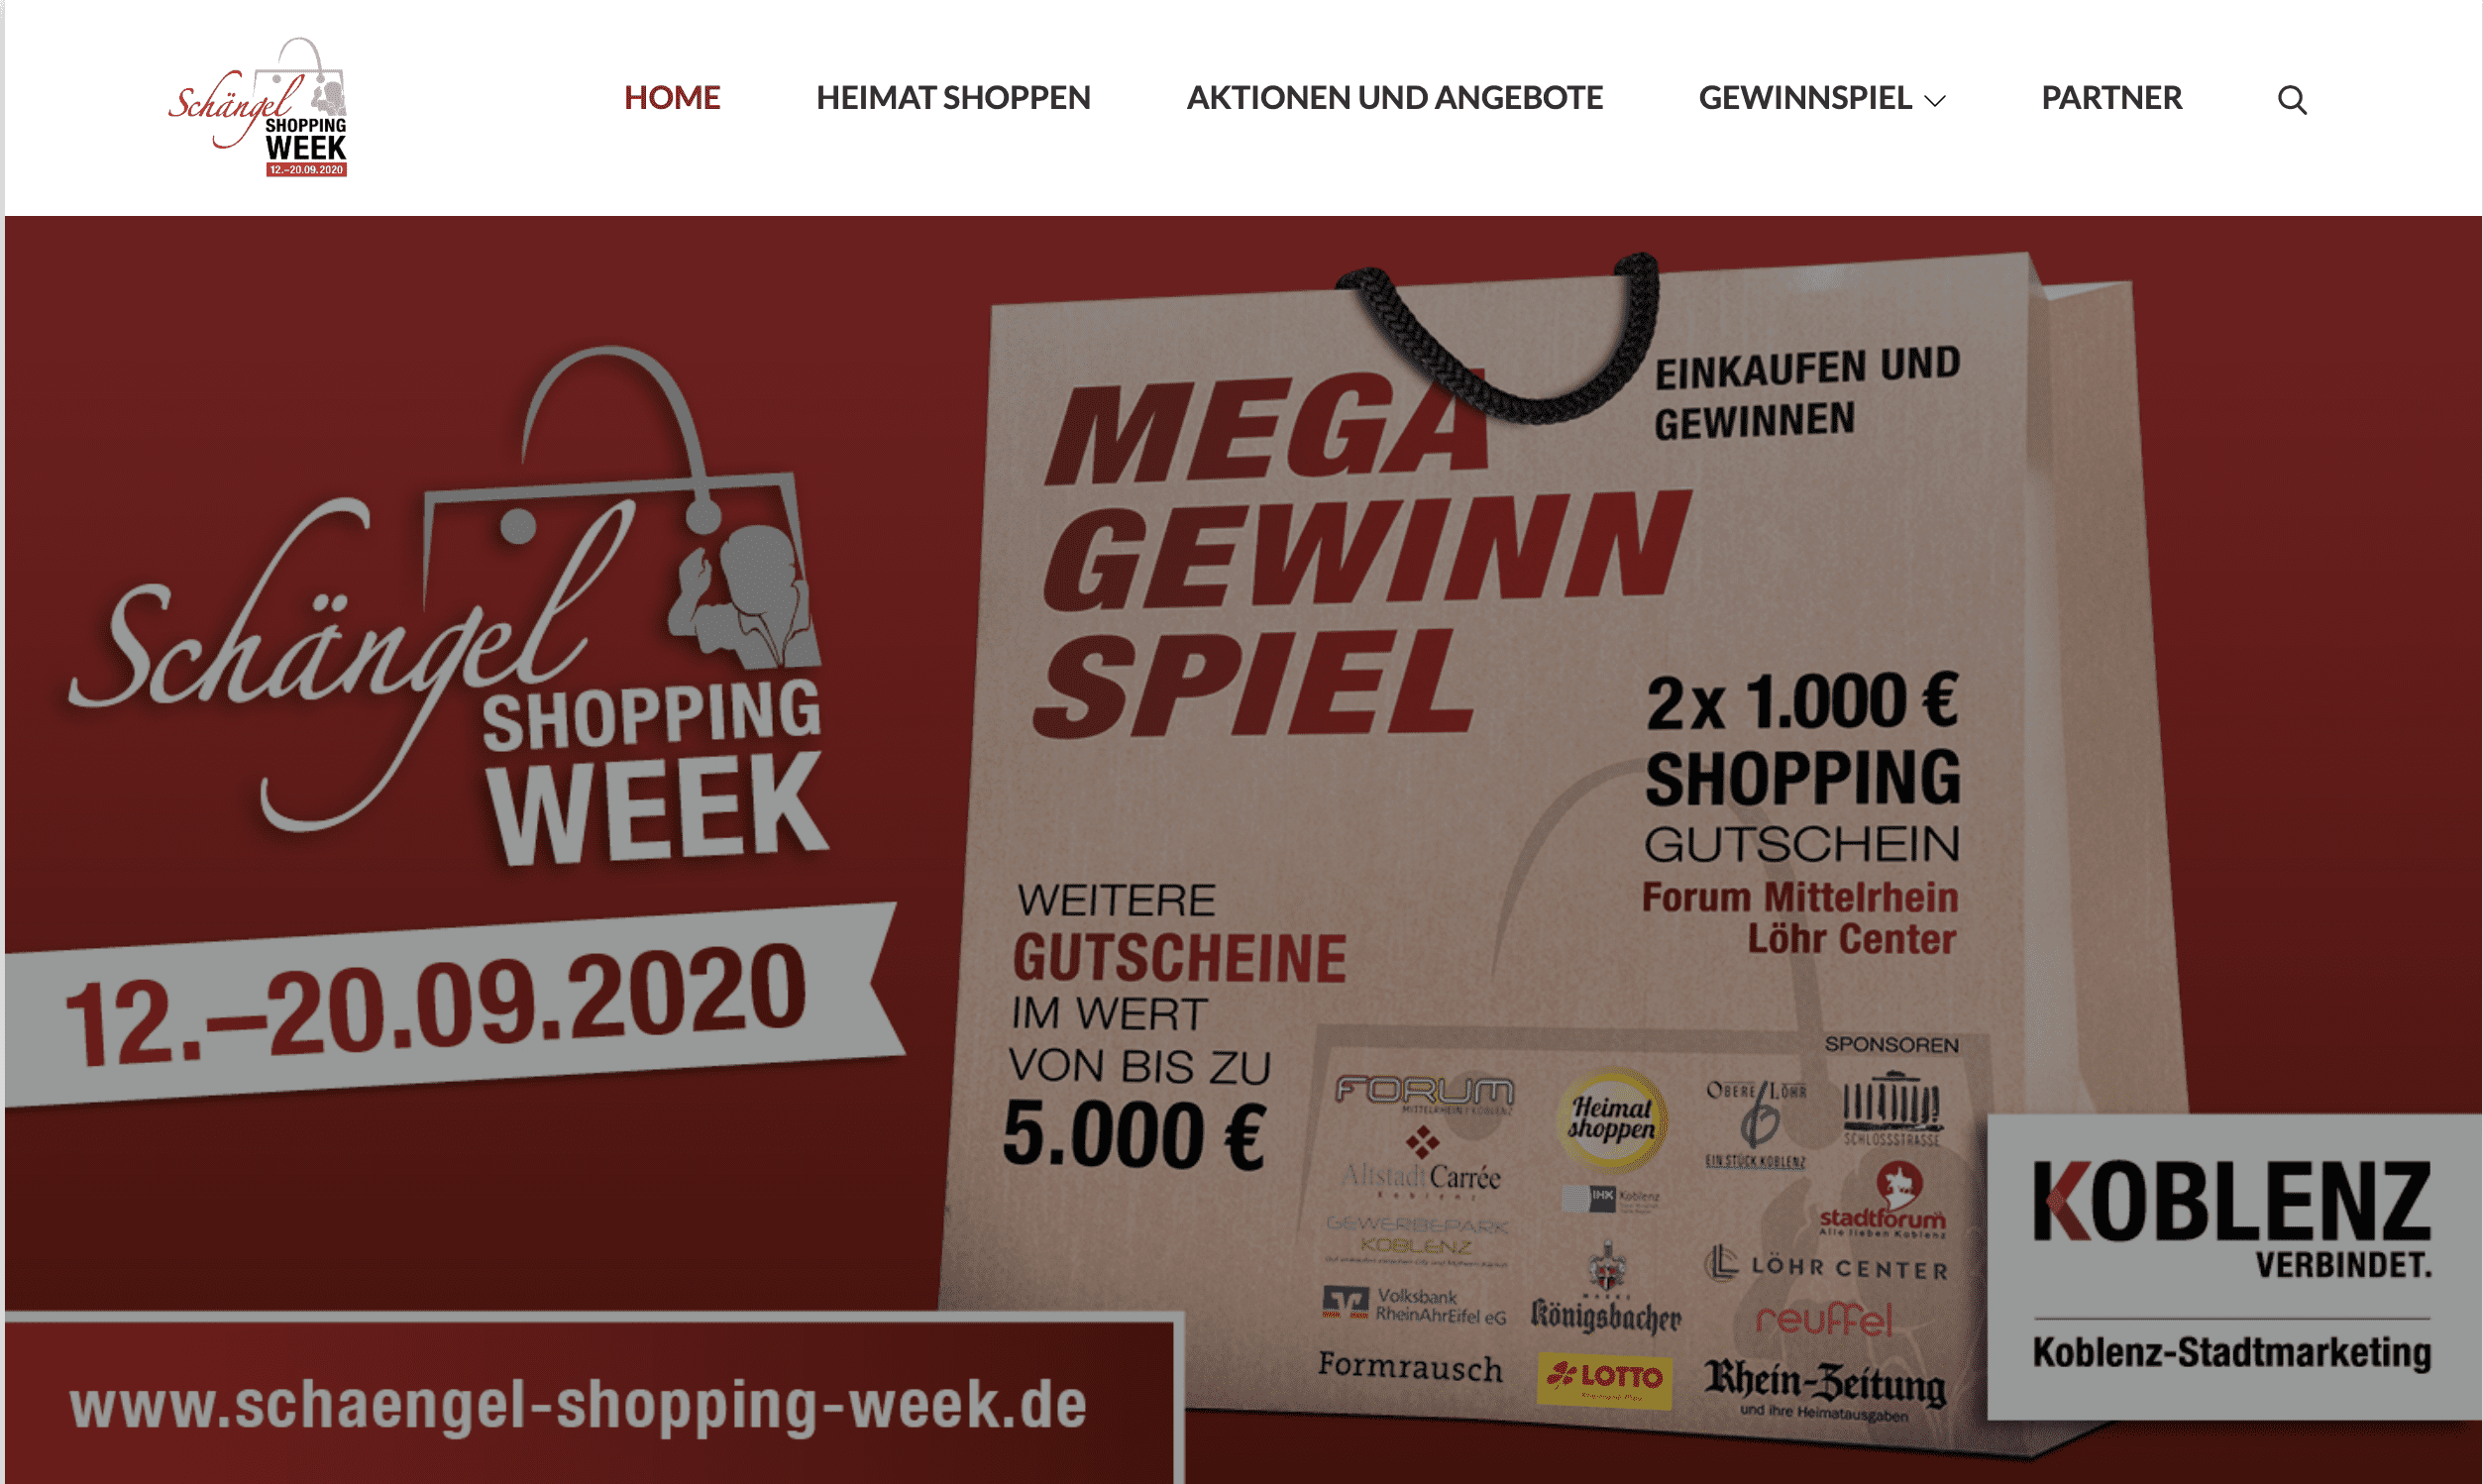 Shopping Week Gewinnspiel in Koblenz
Gewinnspiel-Cases Gemeinden, Vereine & Verbände